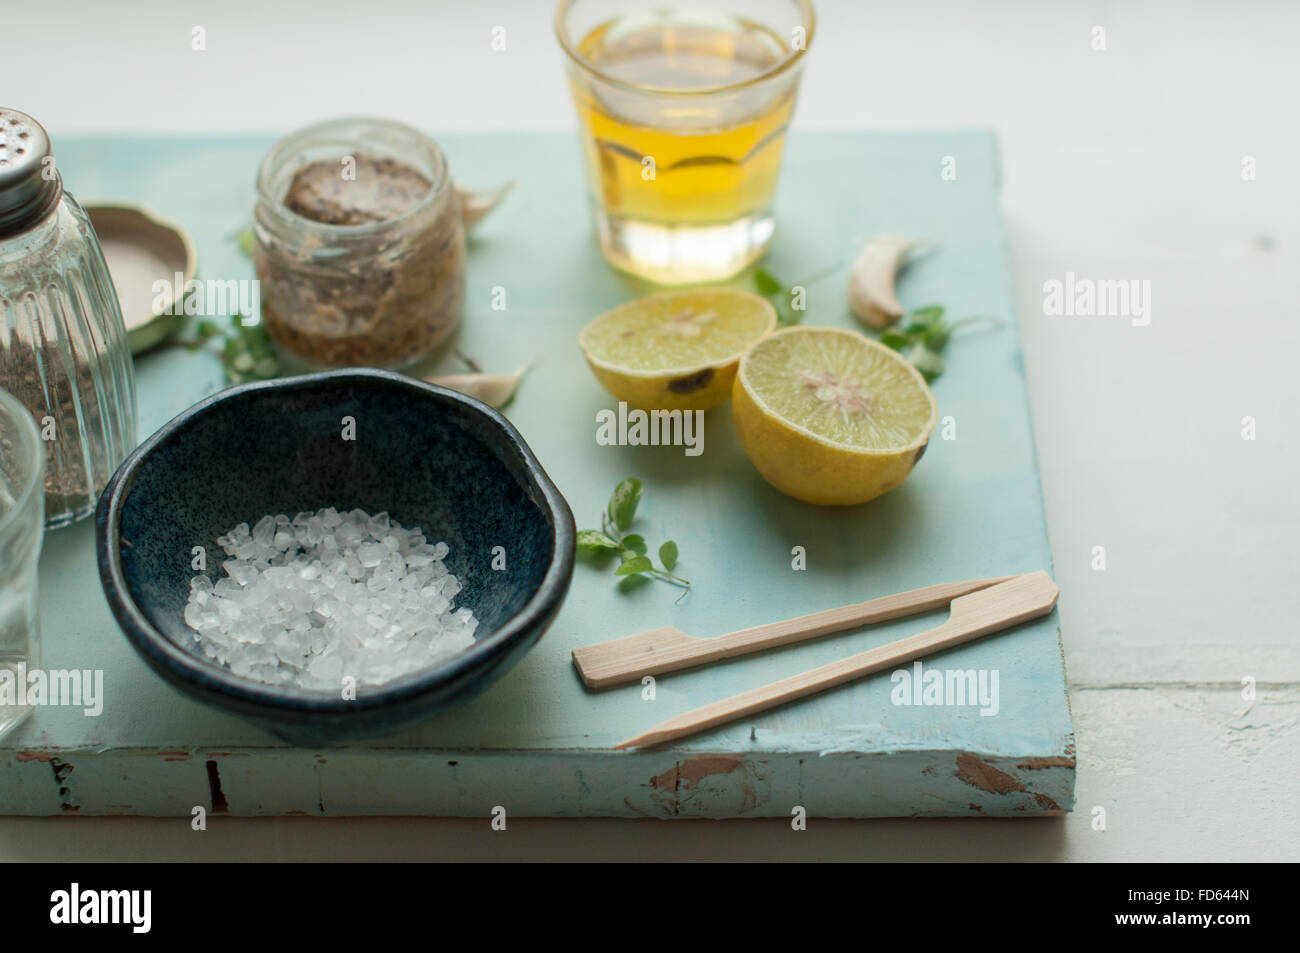 Ingredientes para el aderezo de ensalada sobre un fondo blanco y azul con limón, aceite de oliva, sal de mar, la mostaza, la pimienta y el ajo Foto de stock